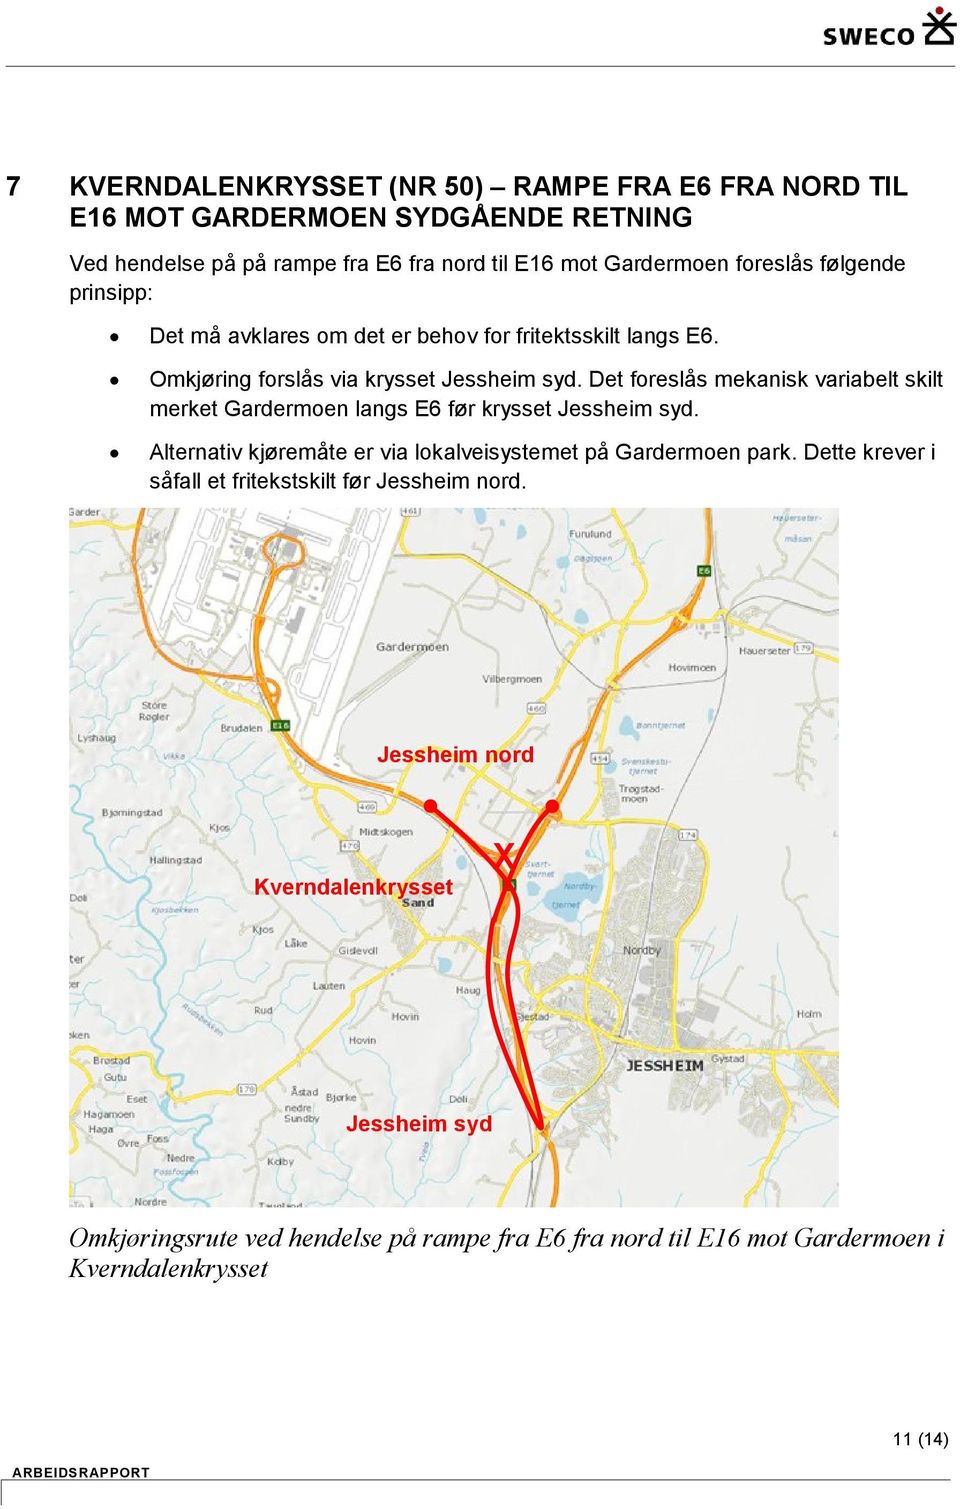 Det foreslås mekanisk variabelt skilt merket Gardermoen langs E6 før krysset syd. Alternativ kjøremåte er via lokalveisystemet på Gardermoen park.